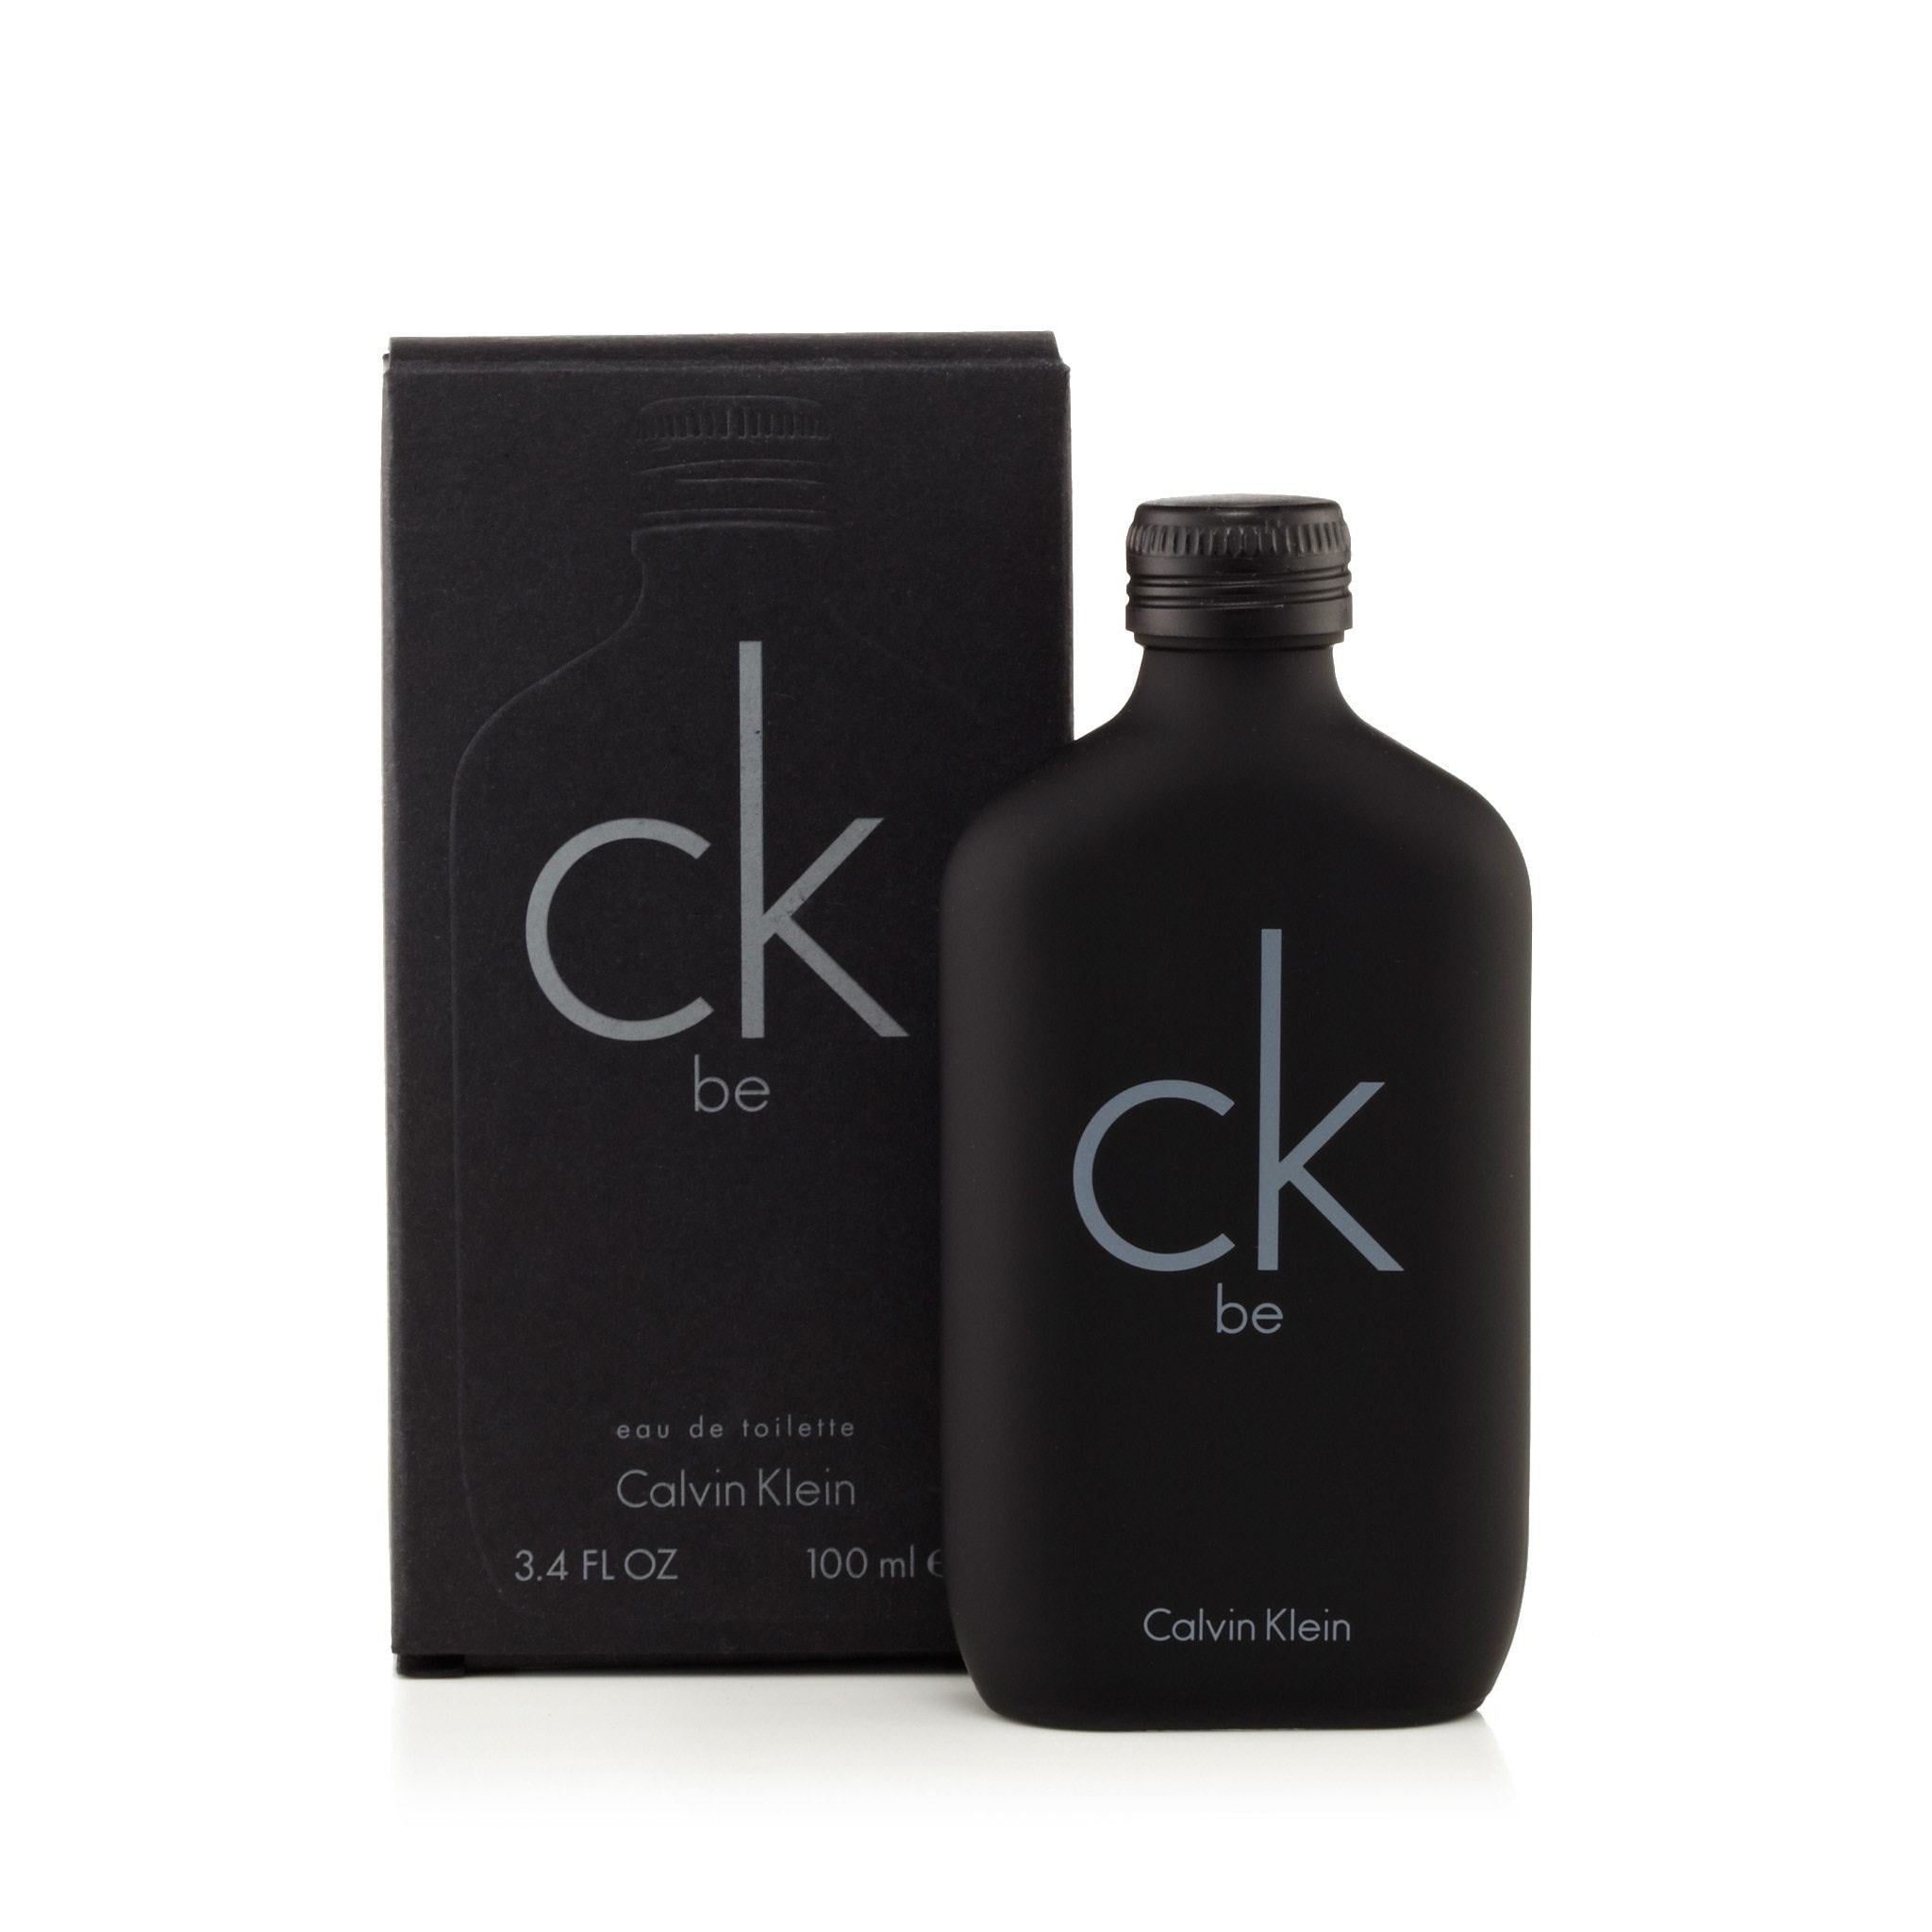 Miniatur CK Be by Calvin Klein Eau de Toilette 0,5 fl.oz/15 ml